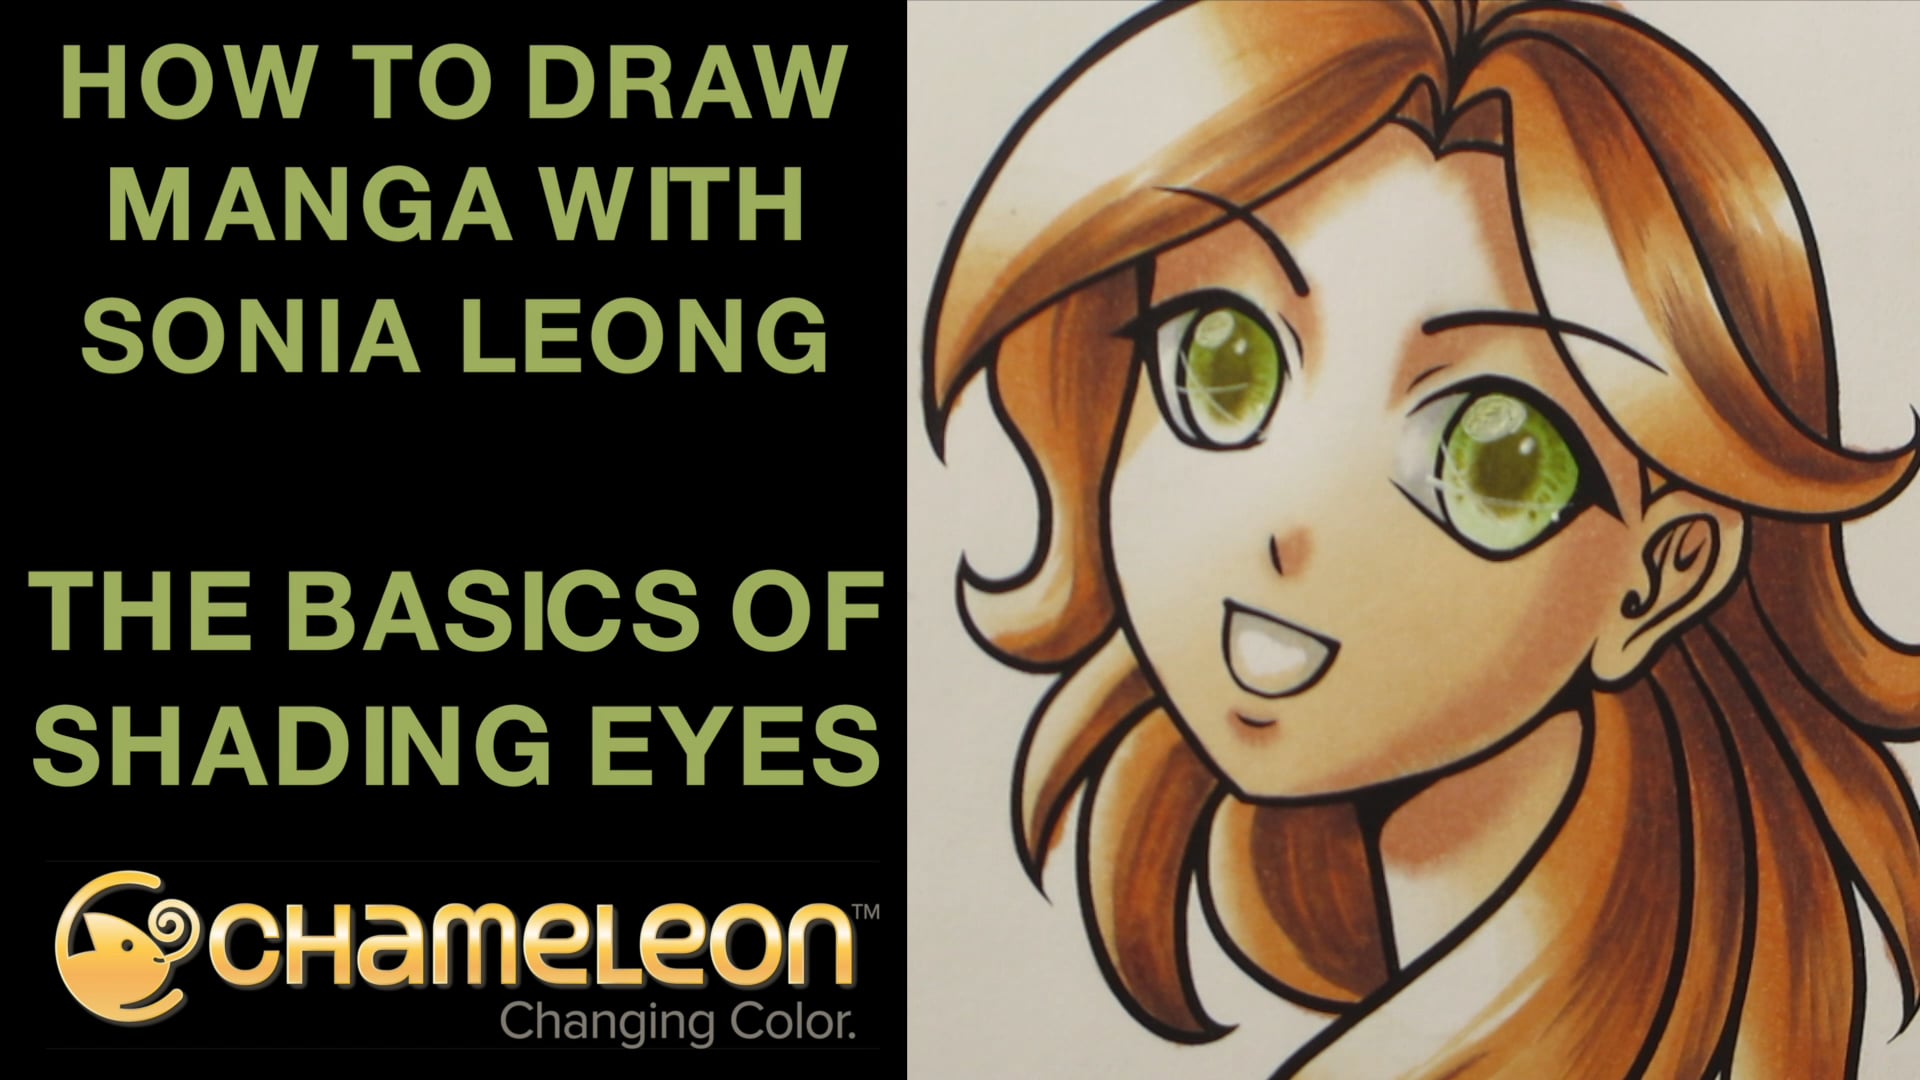 How To Draw Manga With Sonia Leong The Basics Of Shading Eyes On Vimeo 